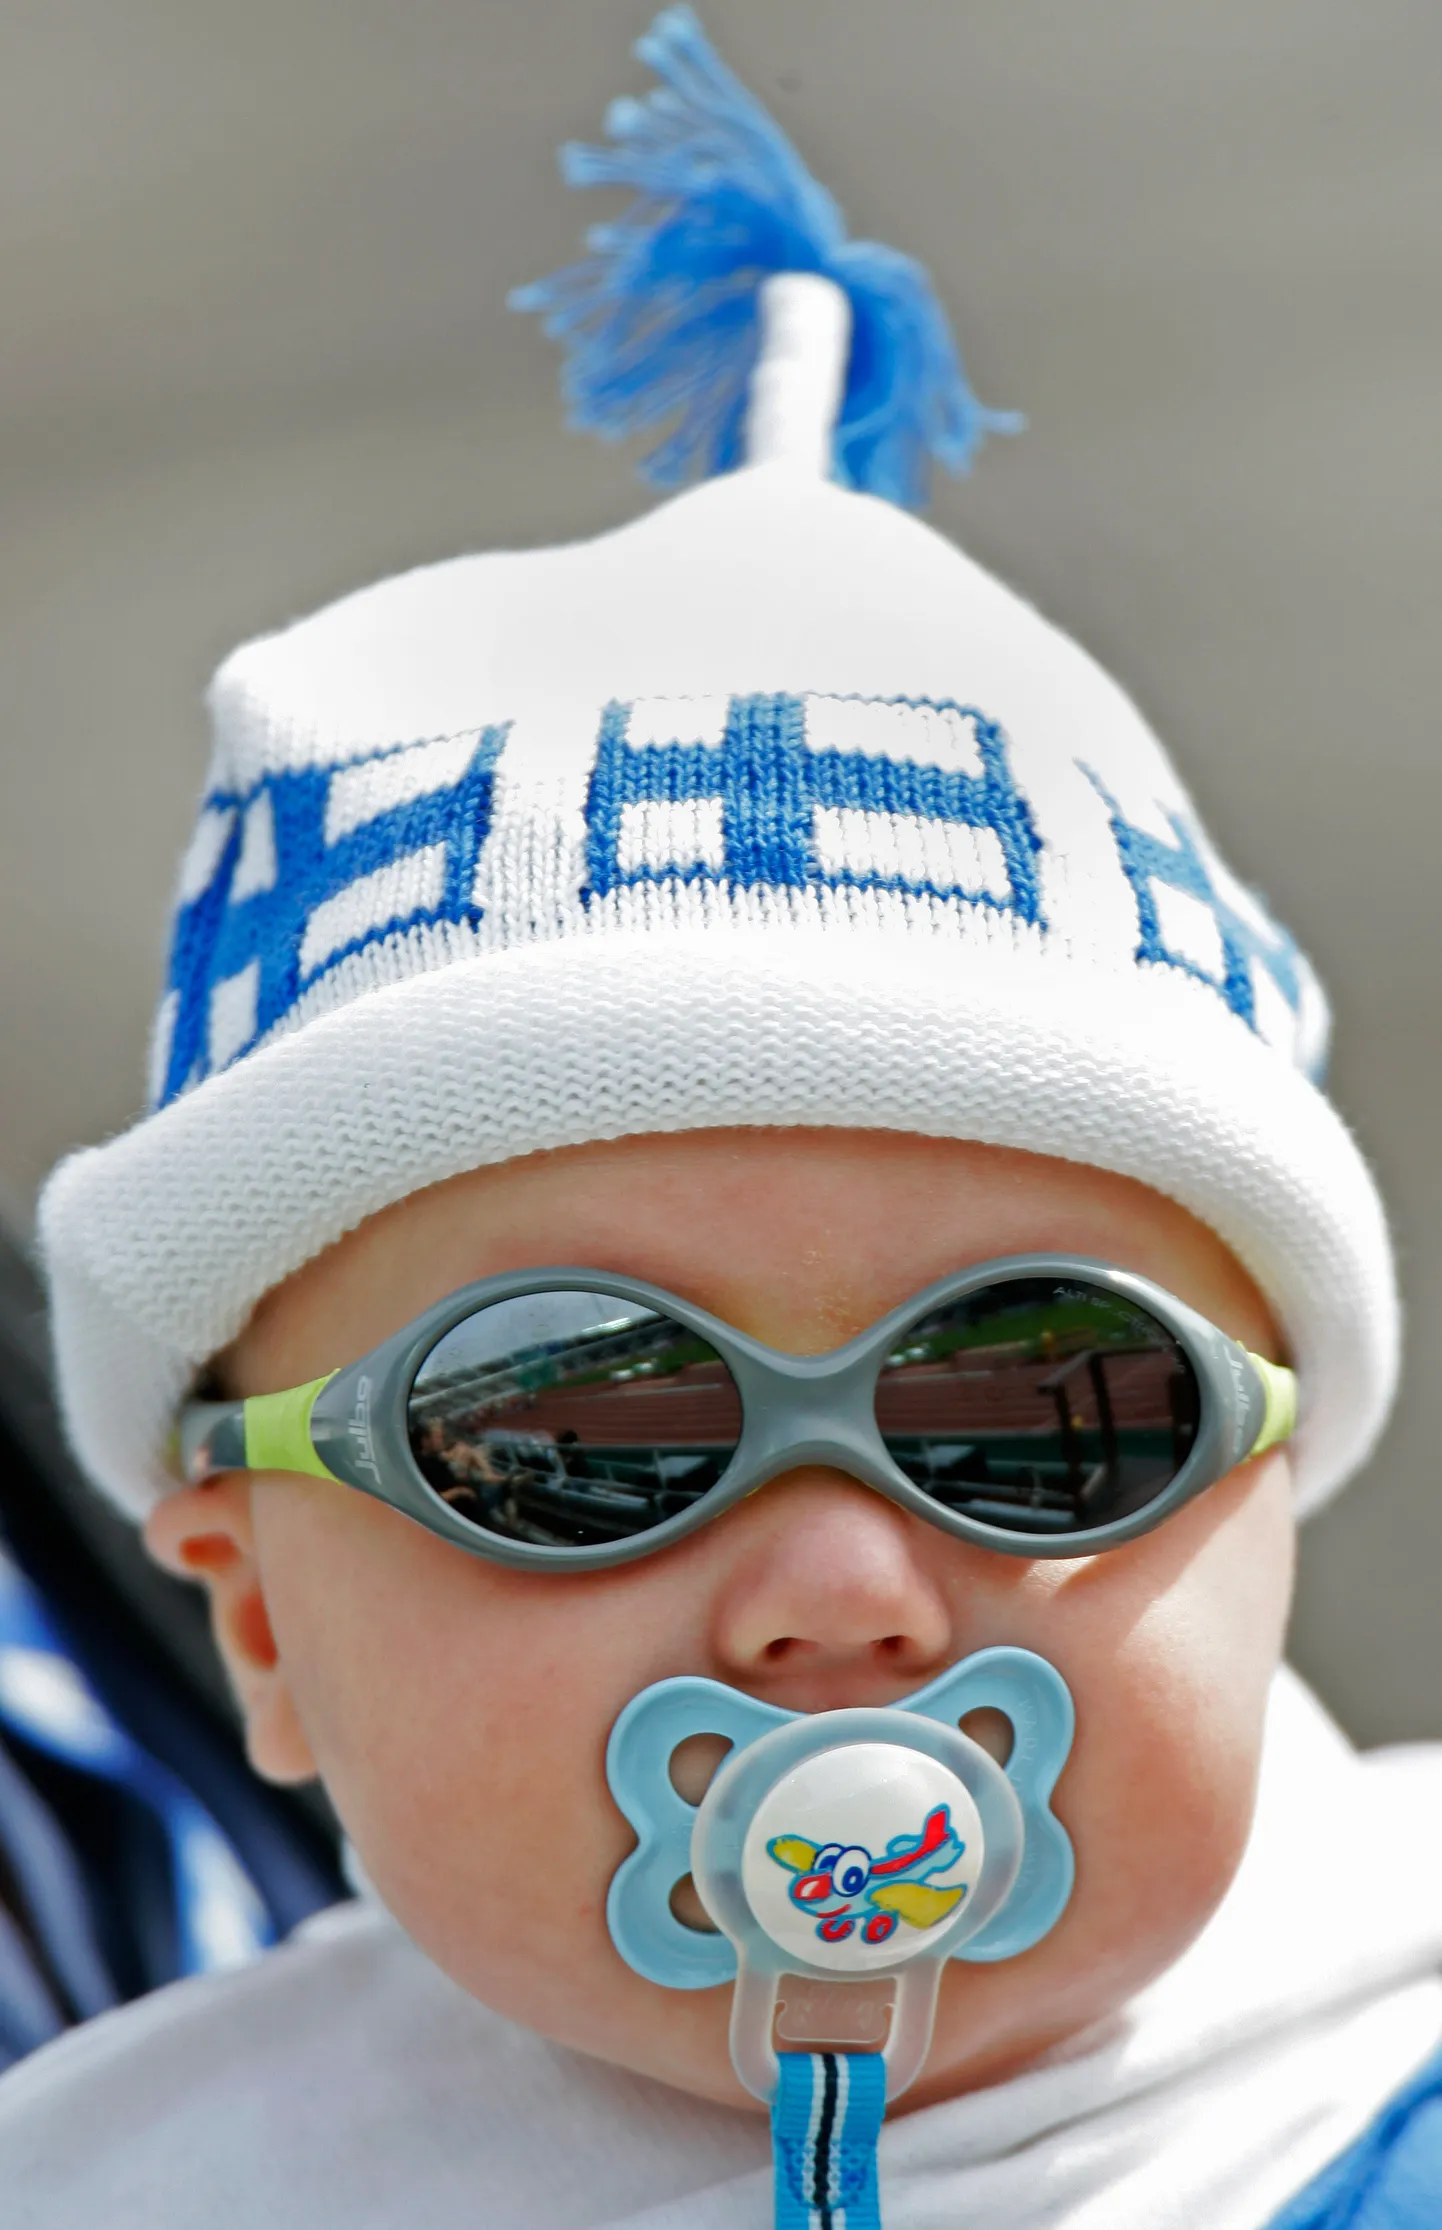 Soome lipuvärvides laps Helsingis.